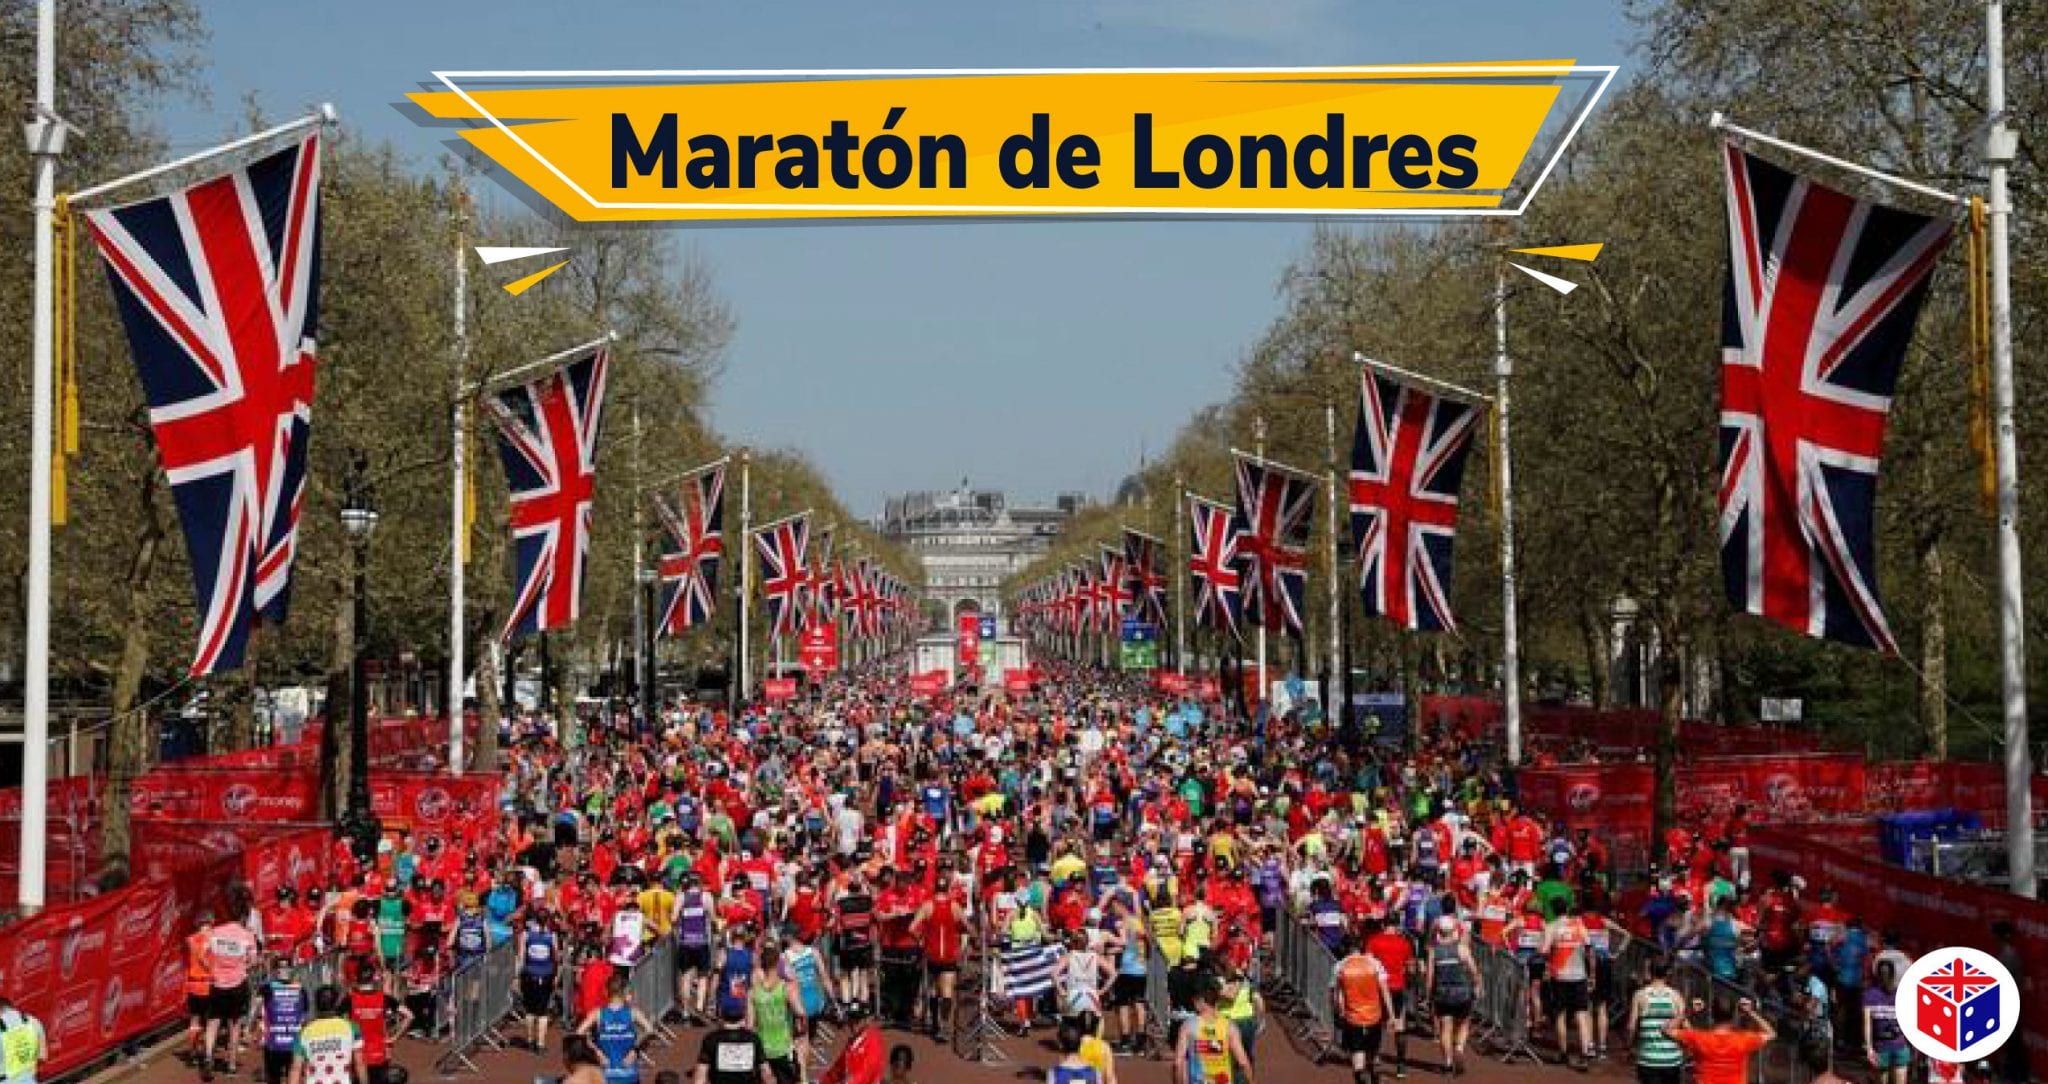 La maratón de Londres será solo para atletas de alto rendimiento